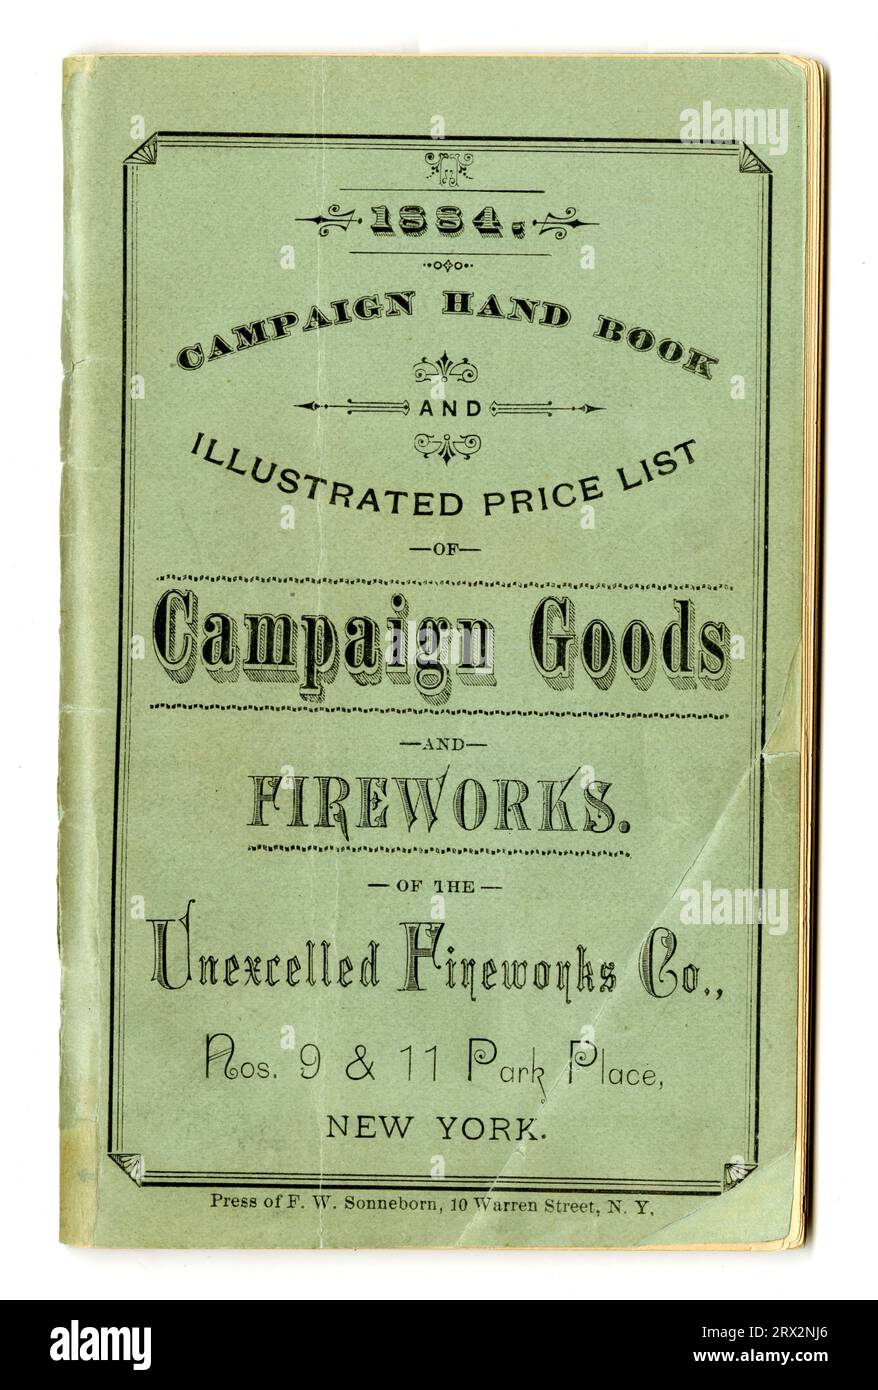 Literatura comercial. Manual de campaña y lista de precios ilustrada de productos de campaña y fuegos artificiales, 1884. PL*227739,1884.D14. Foto de stock